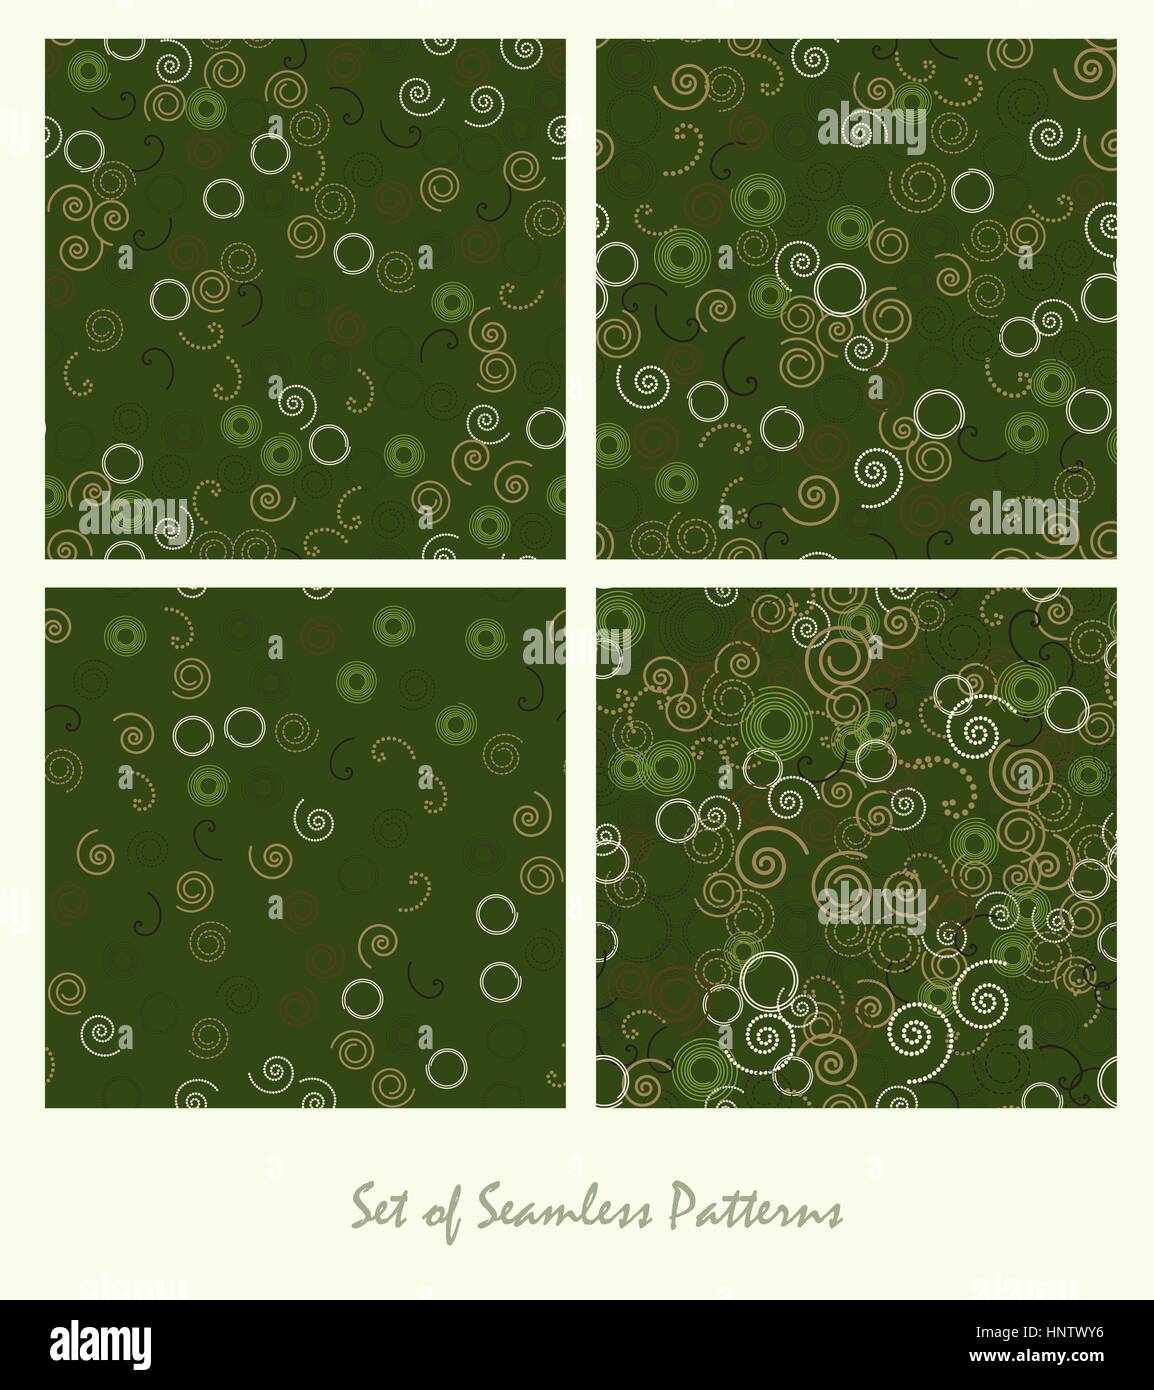 Satz von seamless pattern. Spiralen und Kreisen Farbe grünes Design. Dunkle abstrakten dekorativen Hintergründen. Vektor-Illustration. Stock Vektor